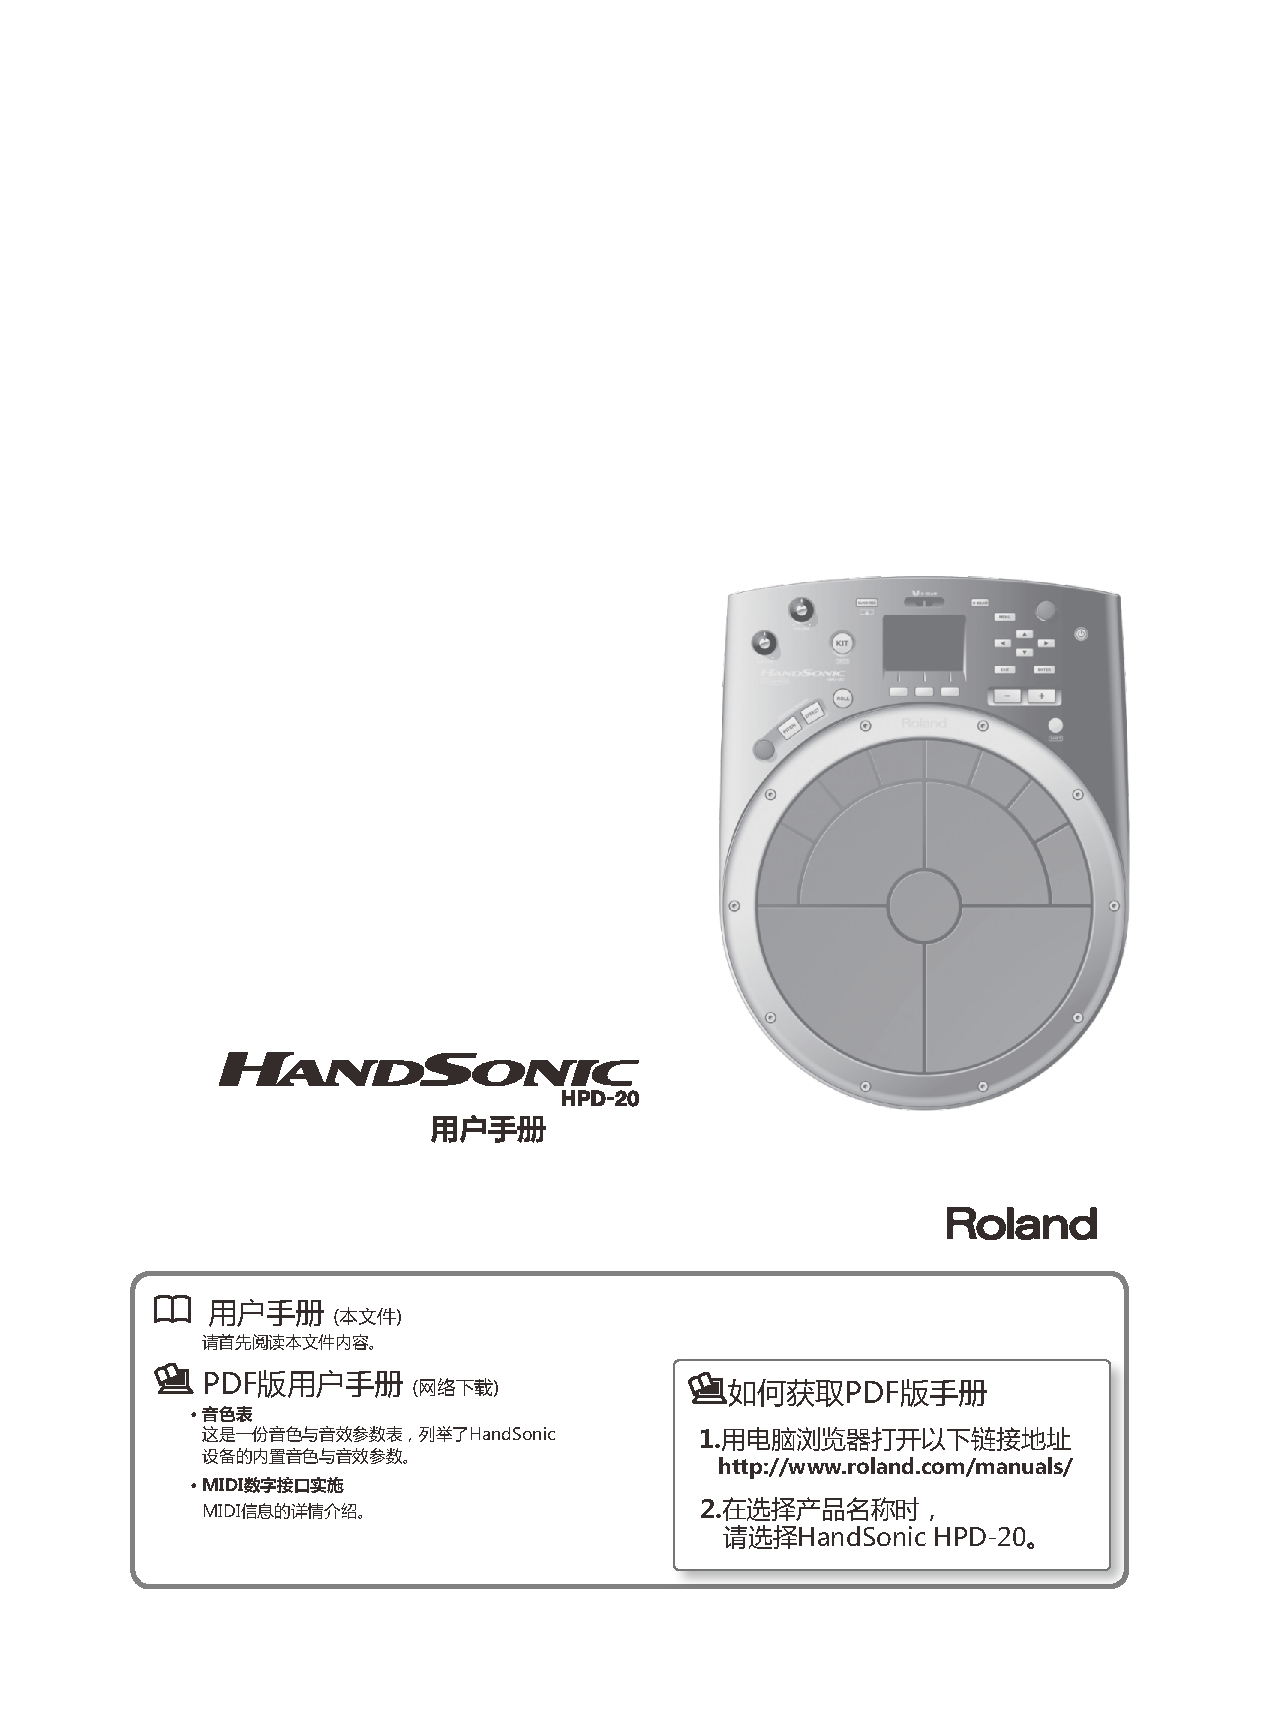 罗兰 Roland HPD-20 使用说明书 封面